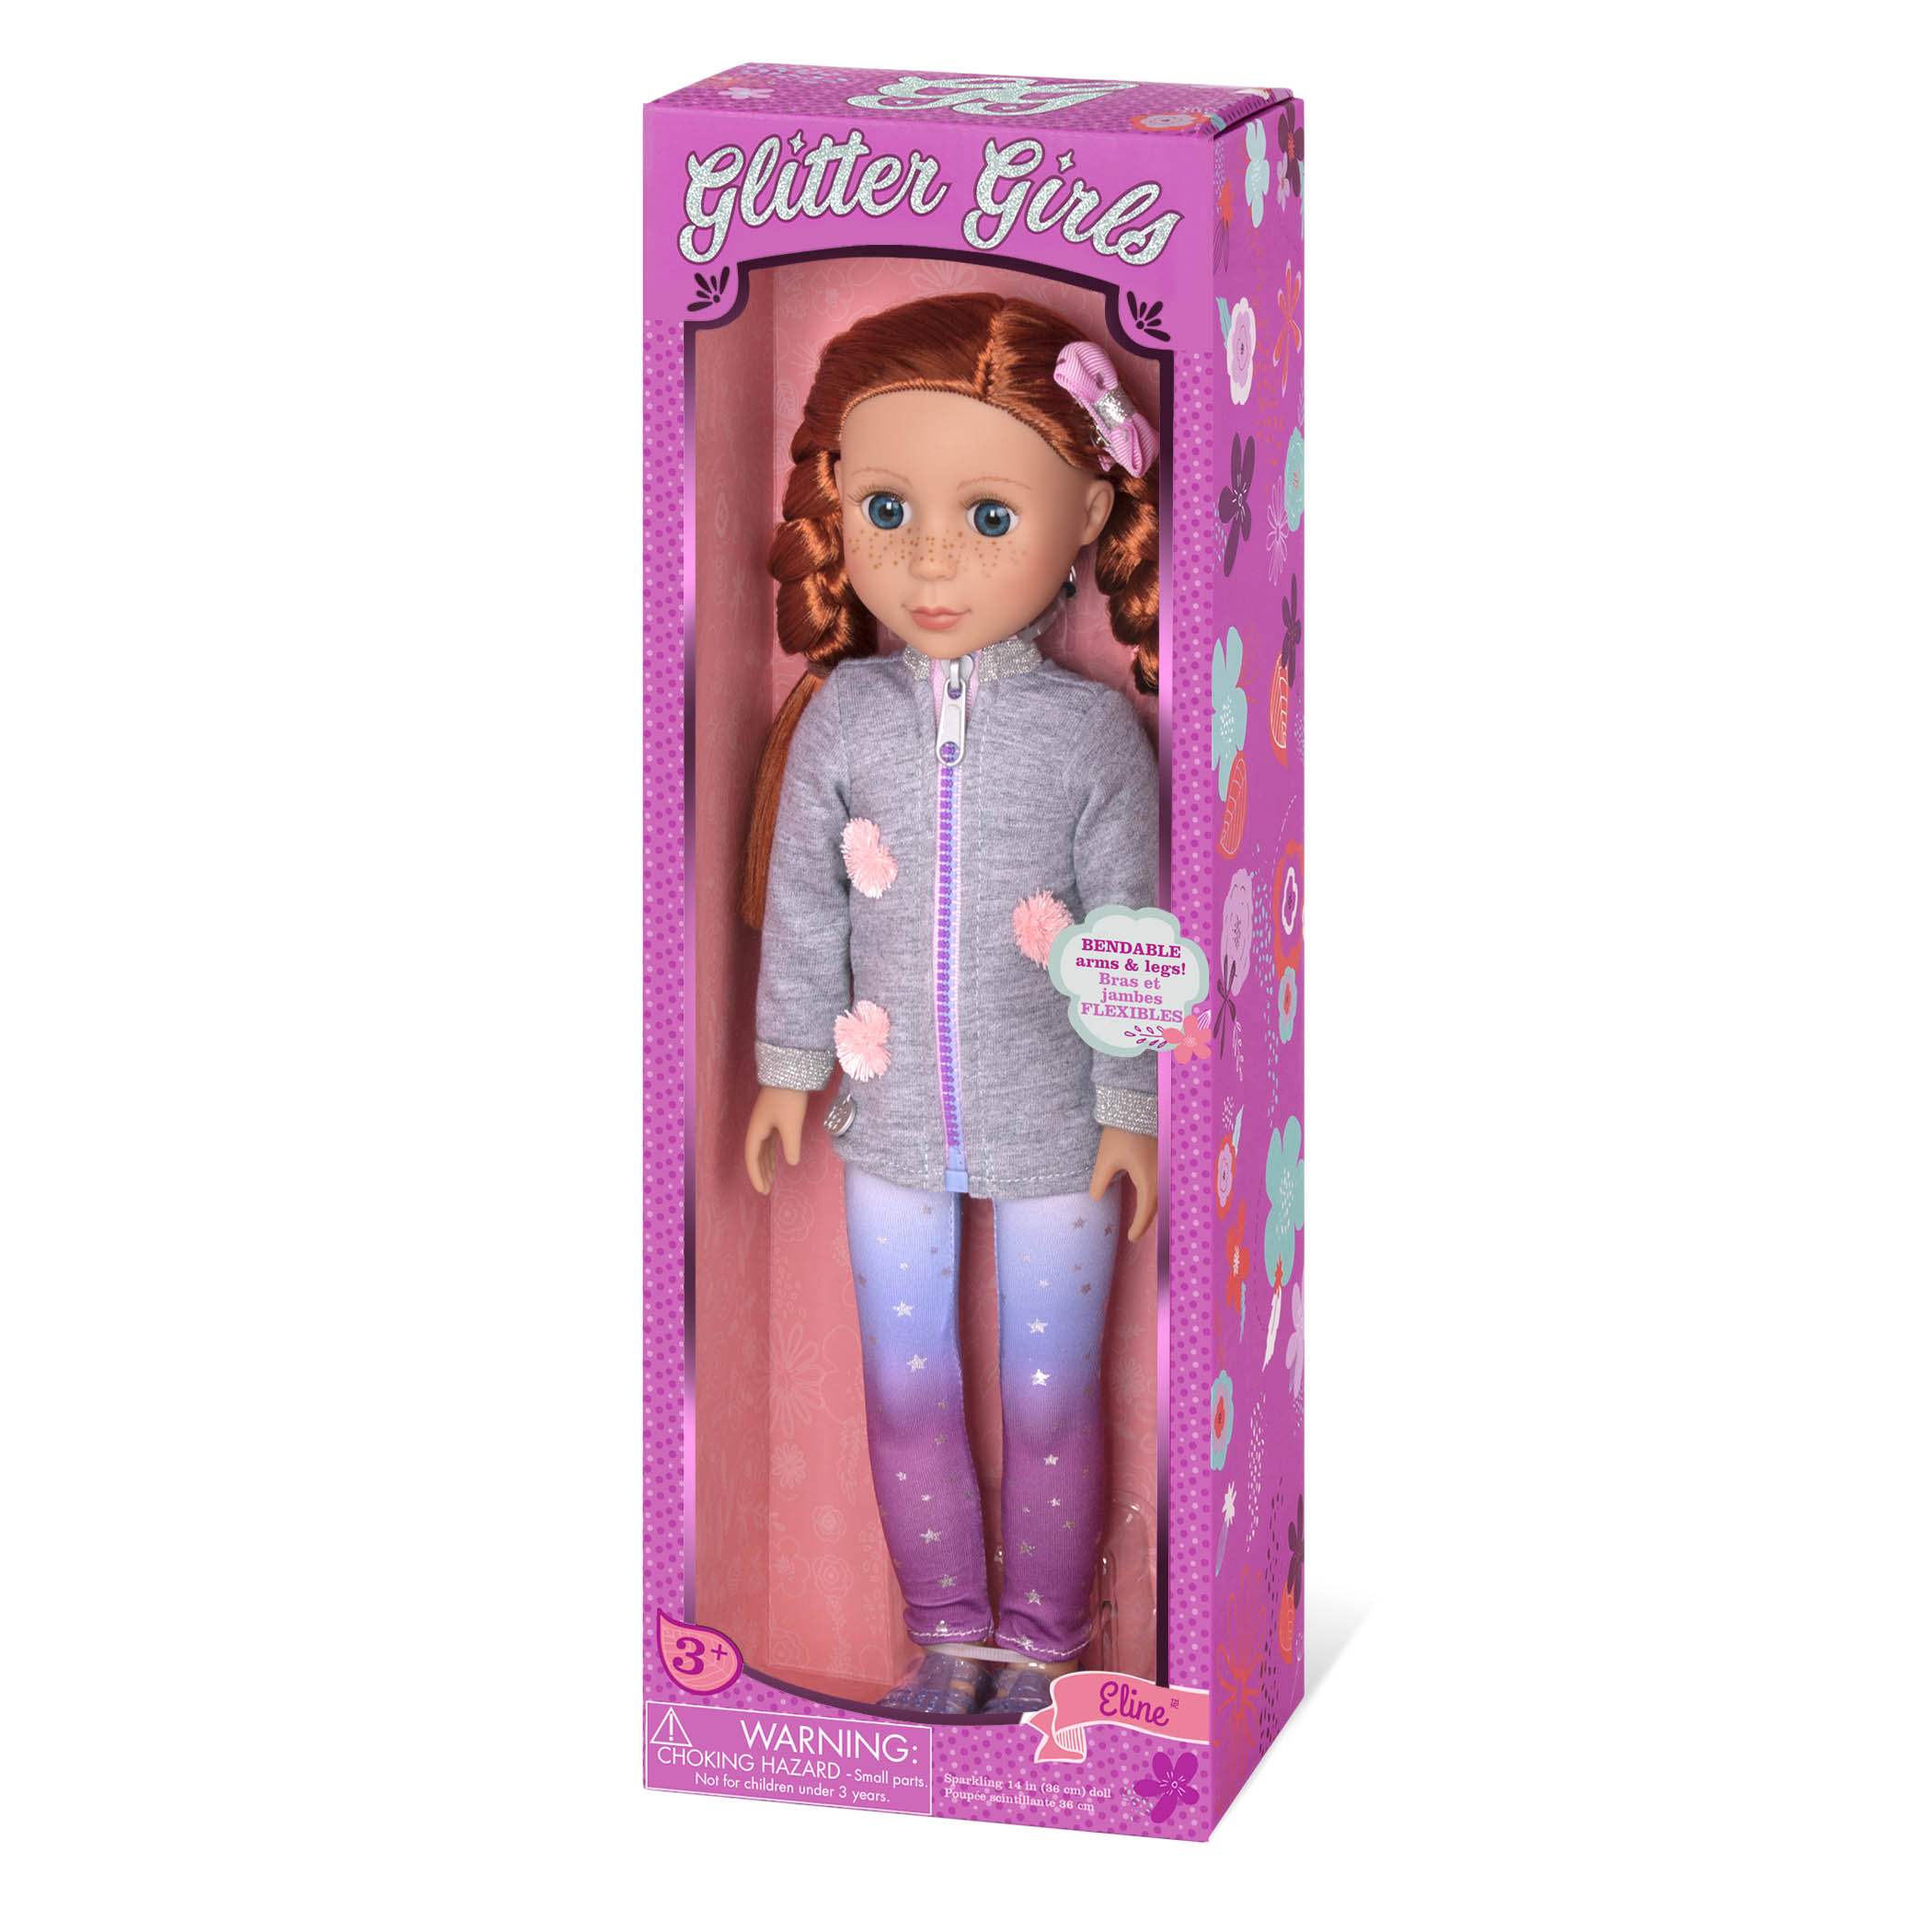 Eline 14-inch Poseable Fashion Doll Glitter Girls Dolls by Battat Dolls... 